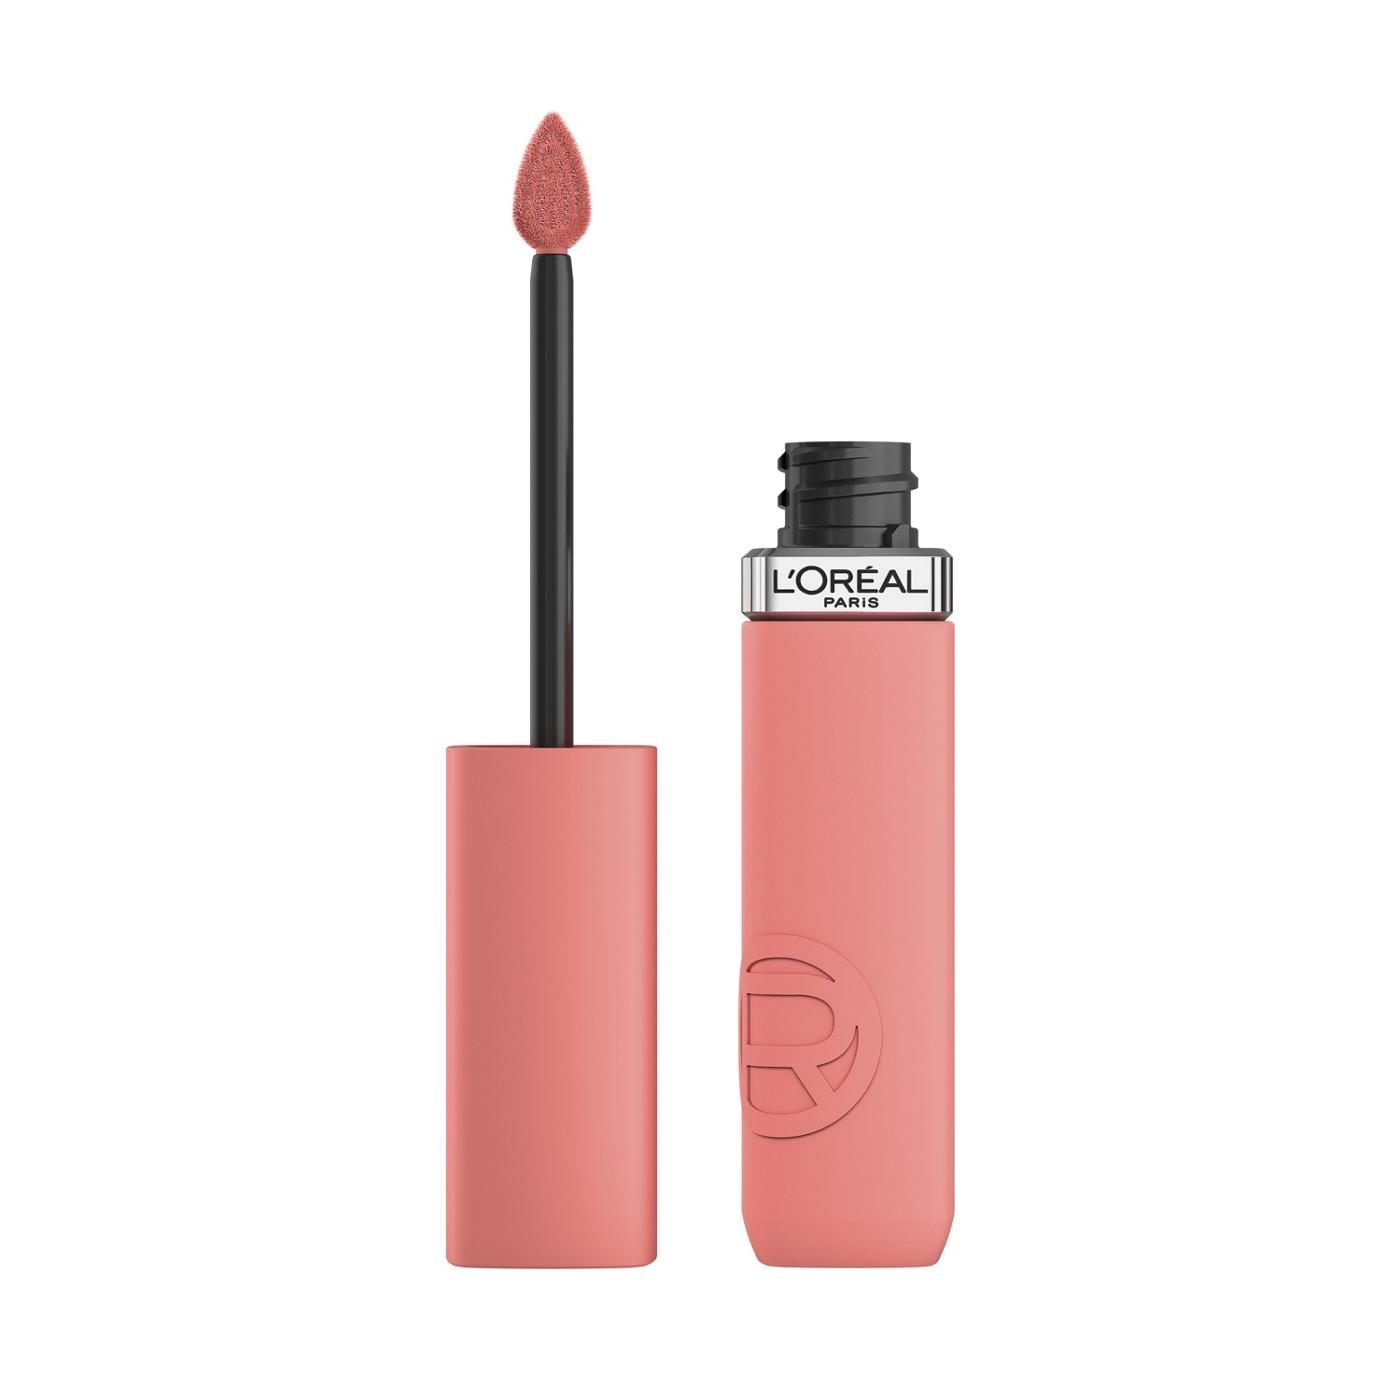 L'Oréal Paris Infallible Le Matte Resistance Liquid Lipstick - First Kiss; image 1 of 6